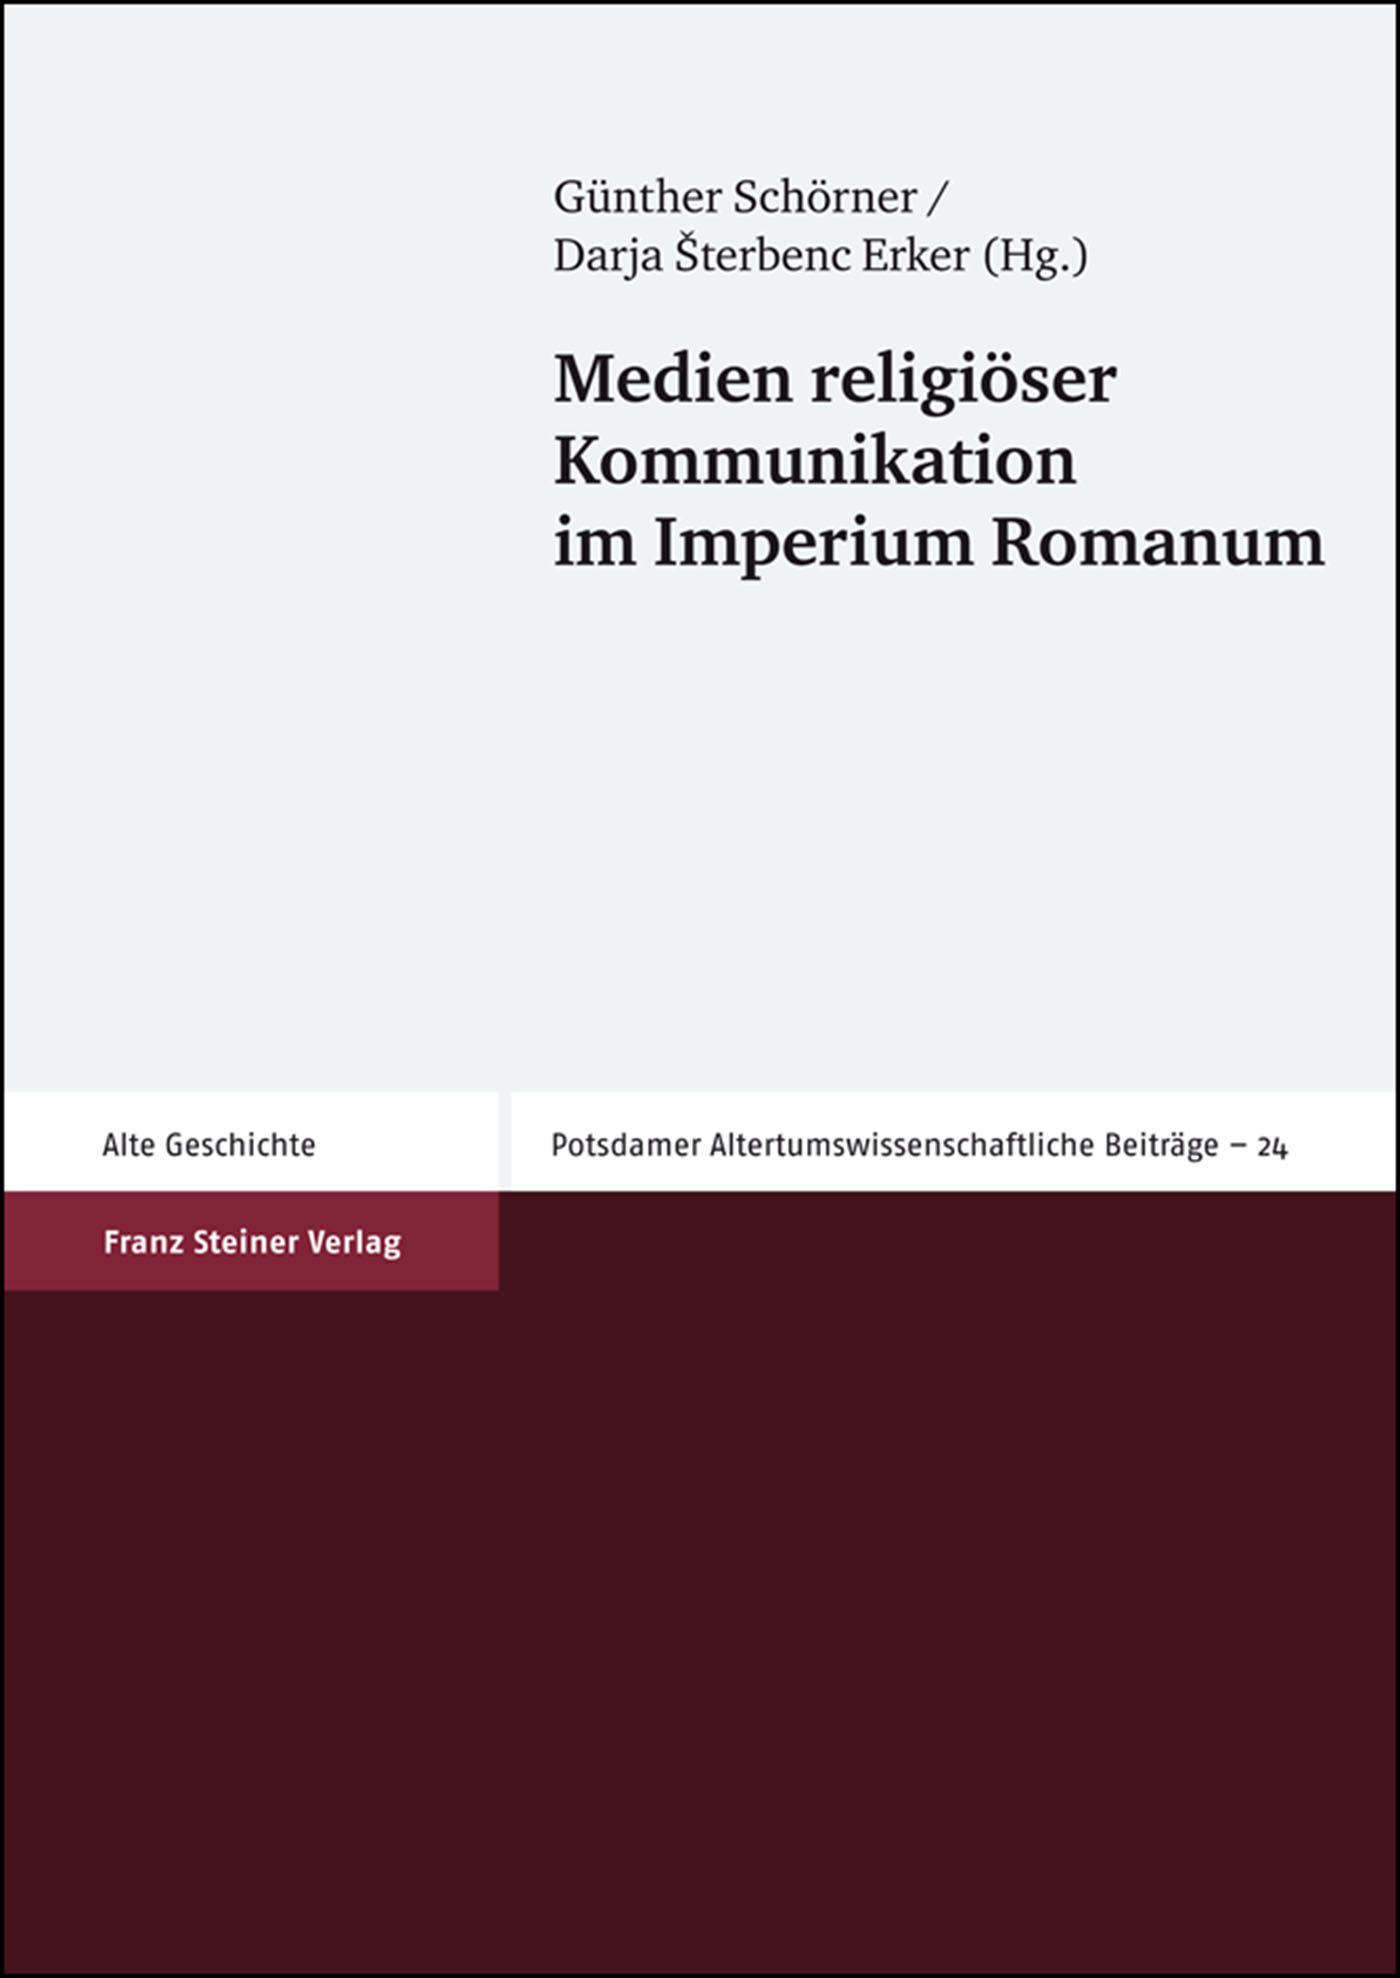 Medien religiöser Kommunikation im Imperium Romanum